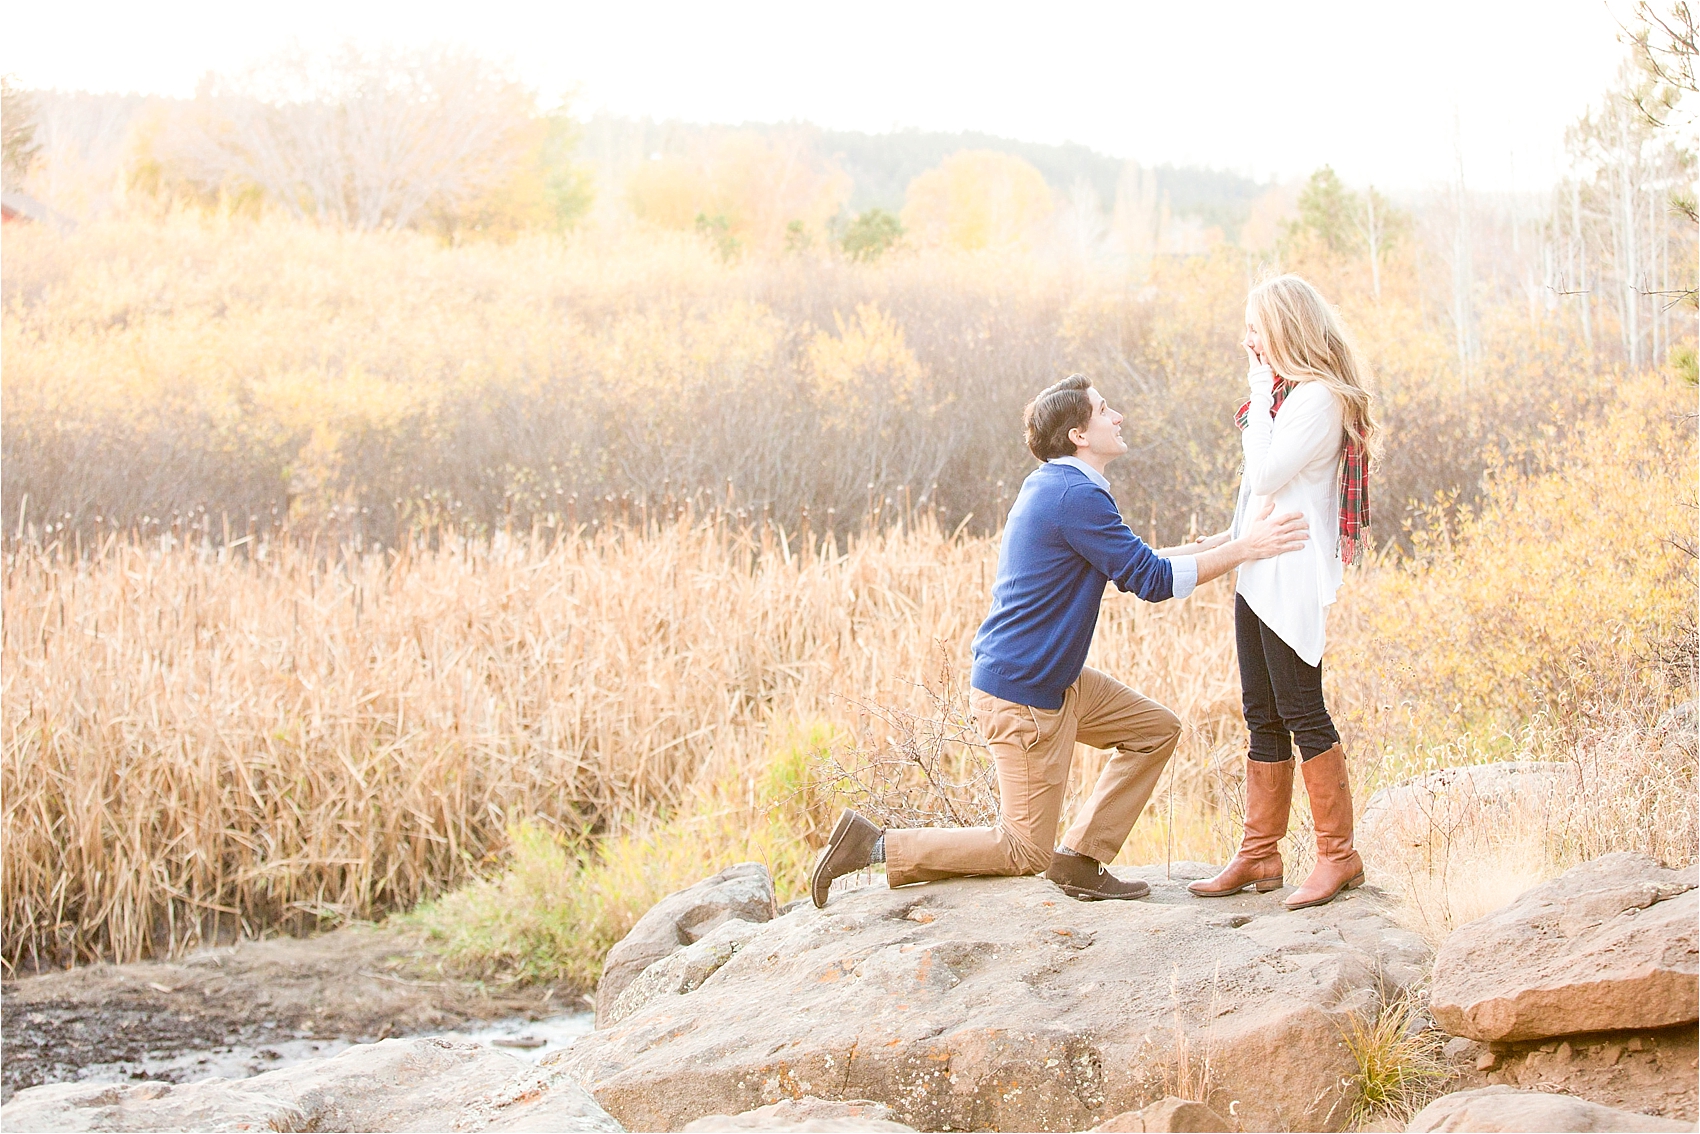 Amy & Jordan | How to Shoot a Proposal